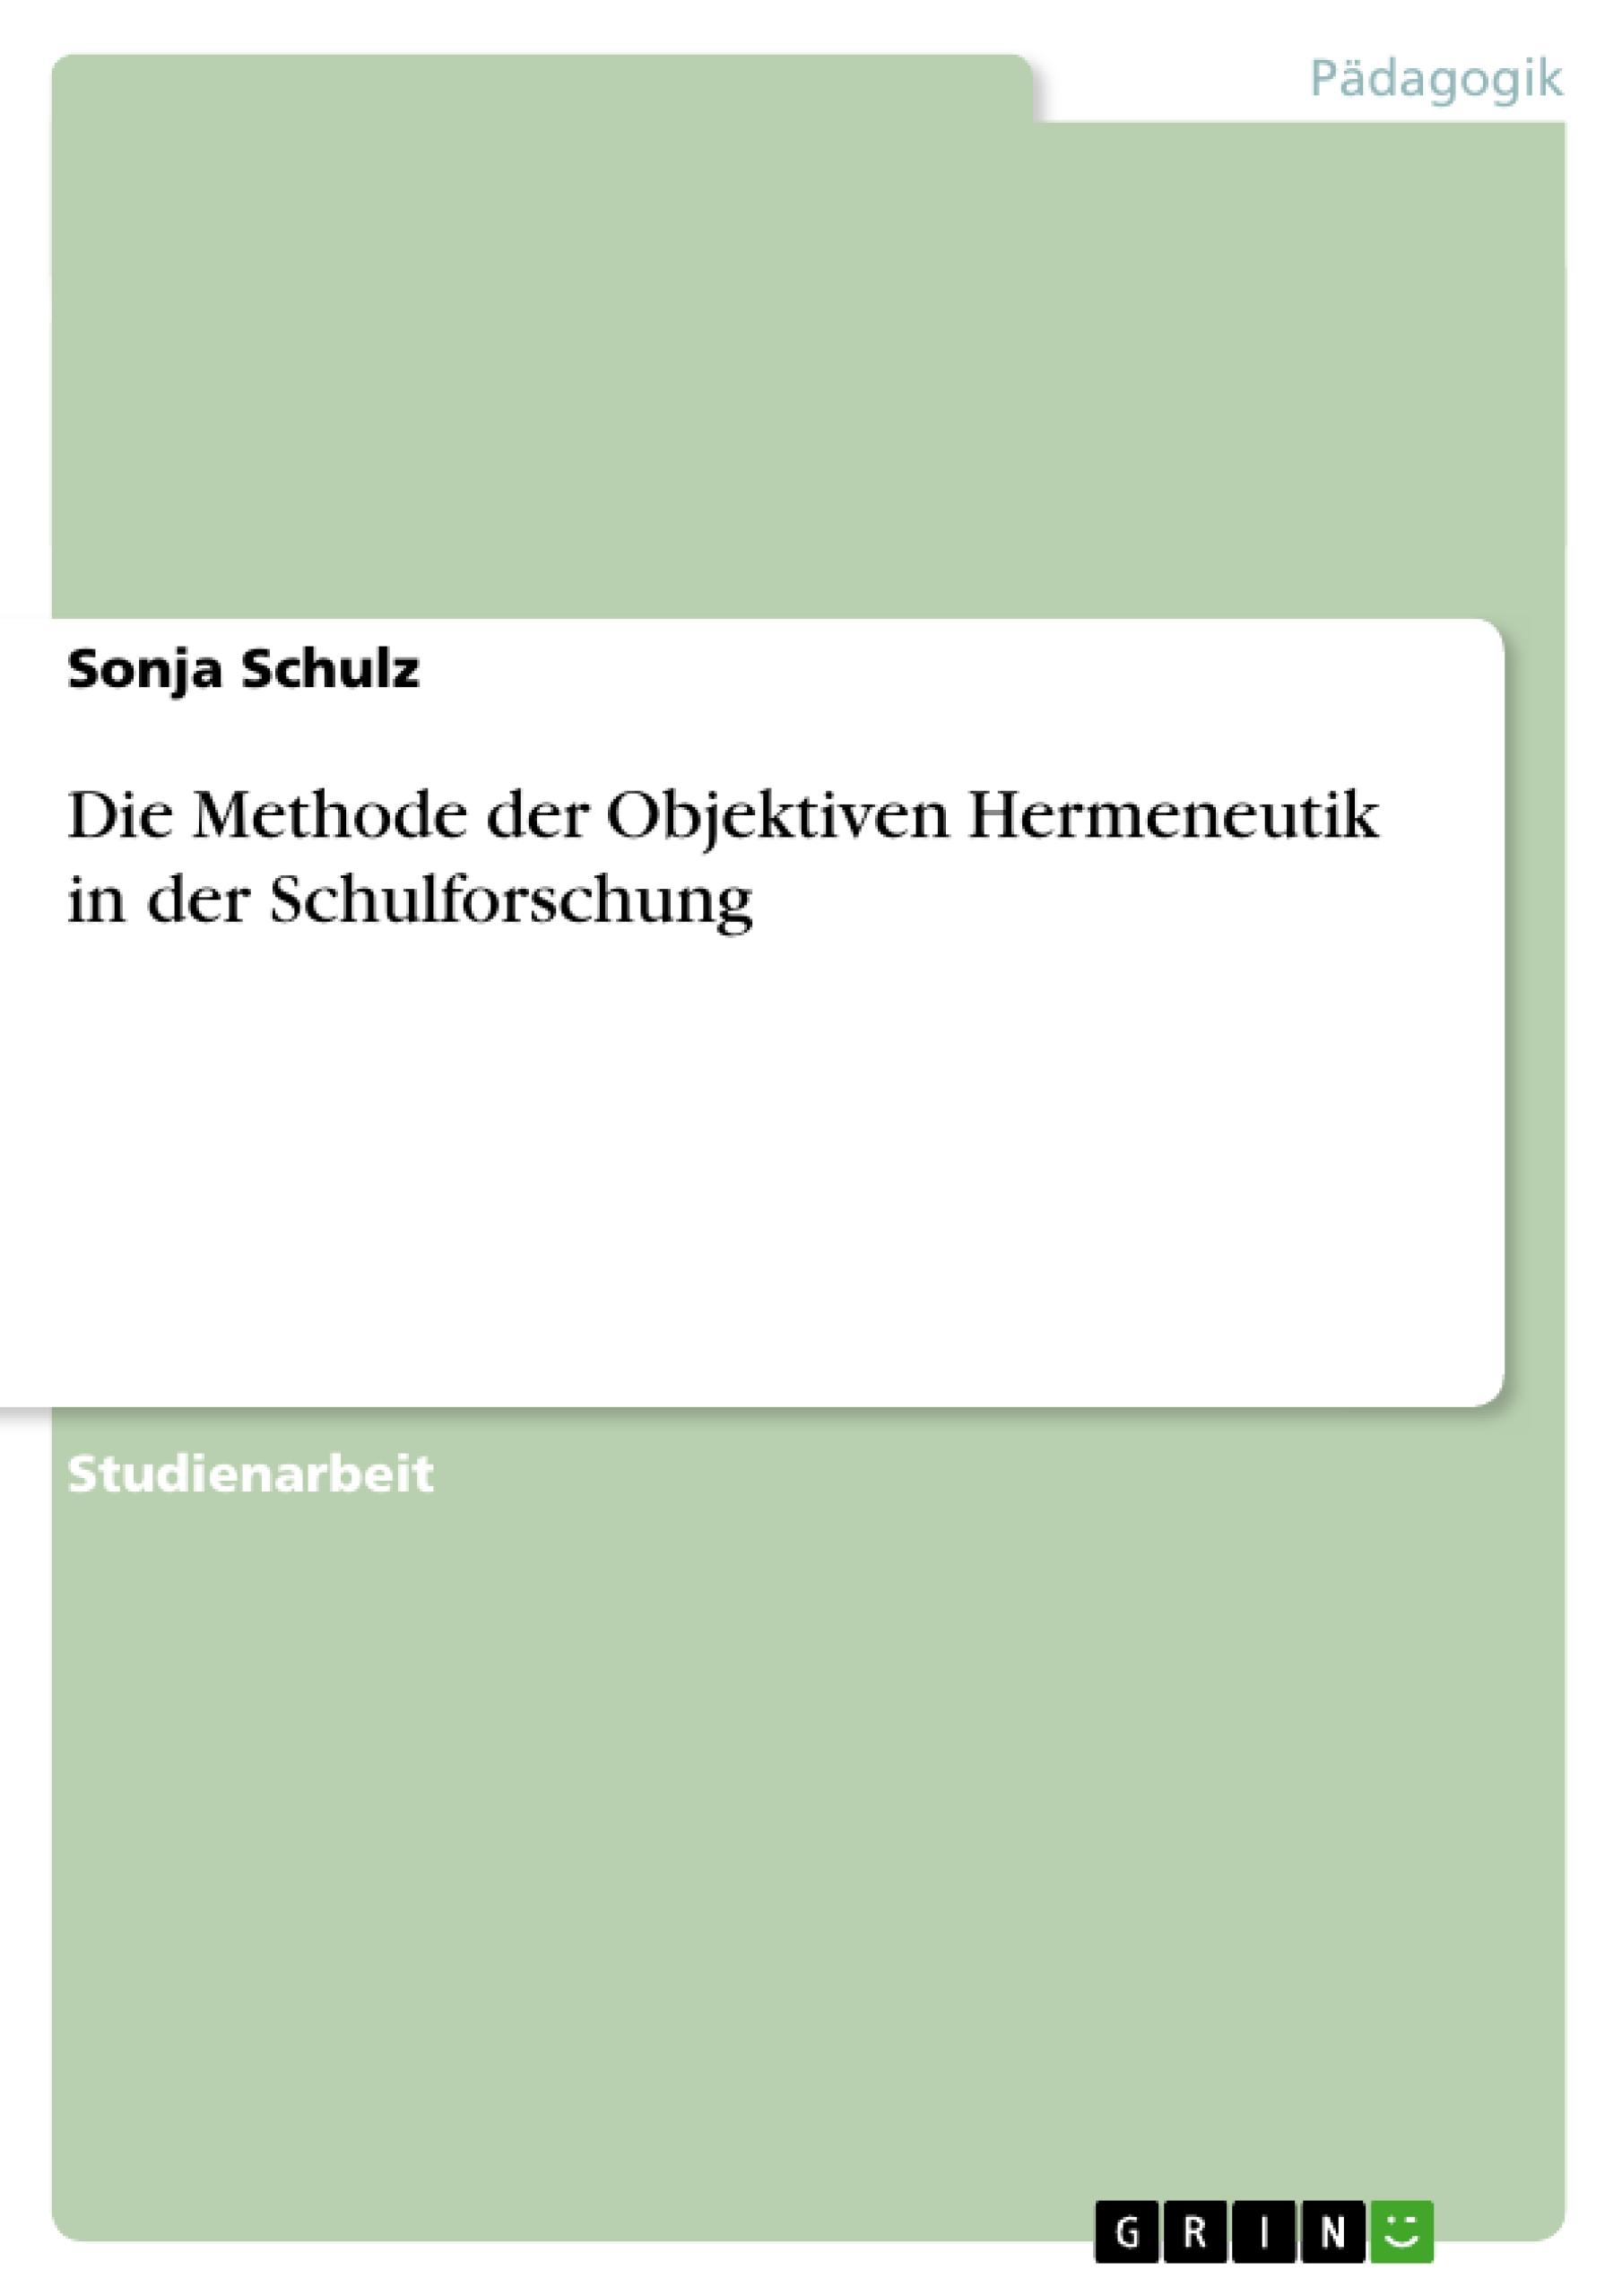 Die Methode der Objektiven Hermeneutik in der Schulforschung - Schulz, Sonja